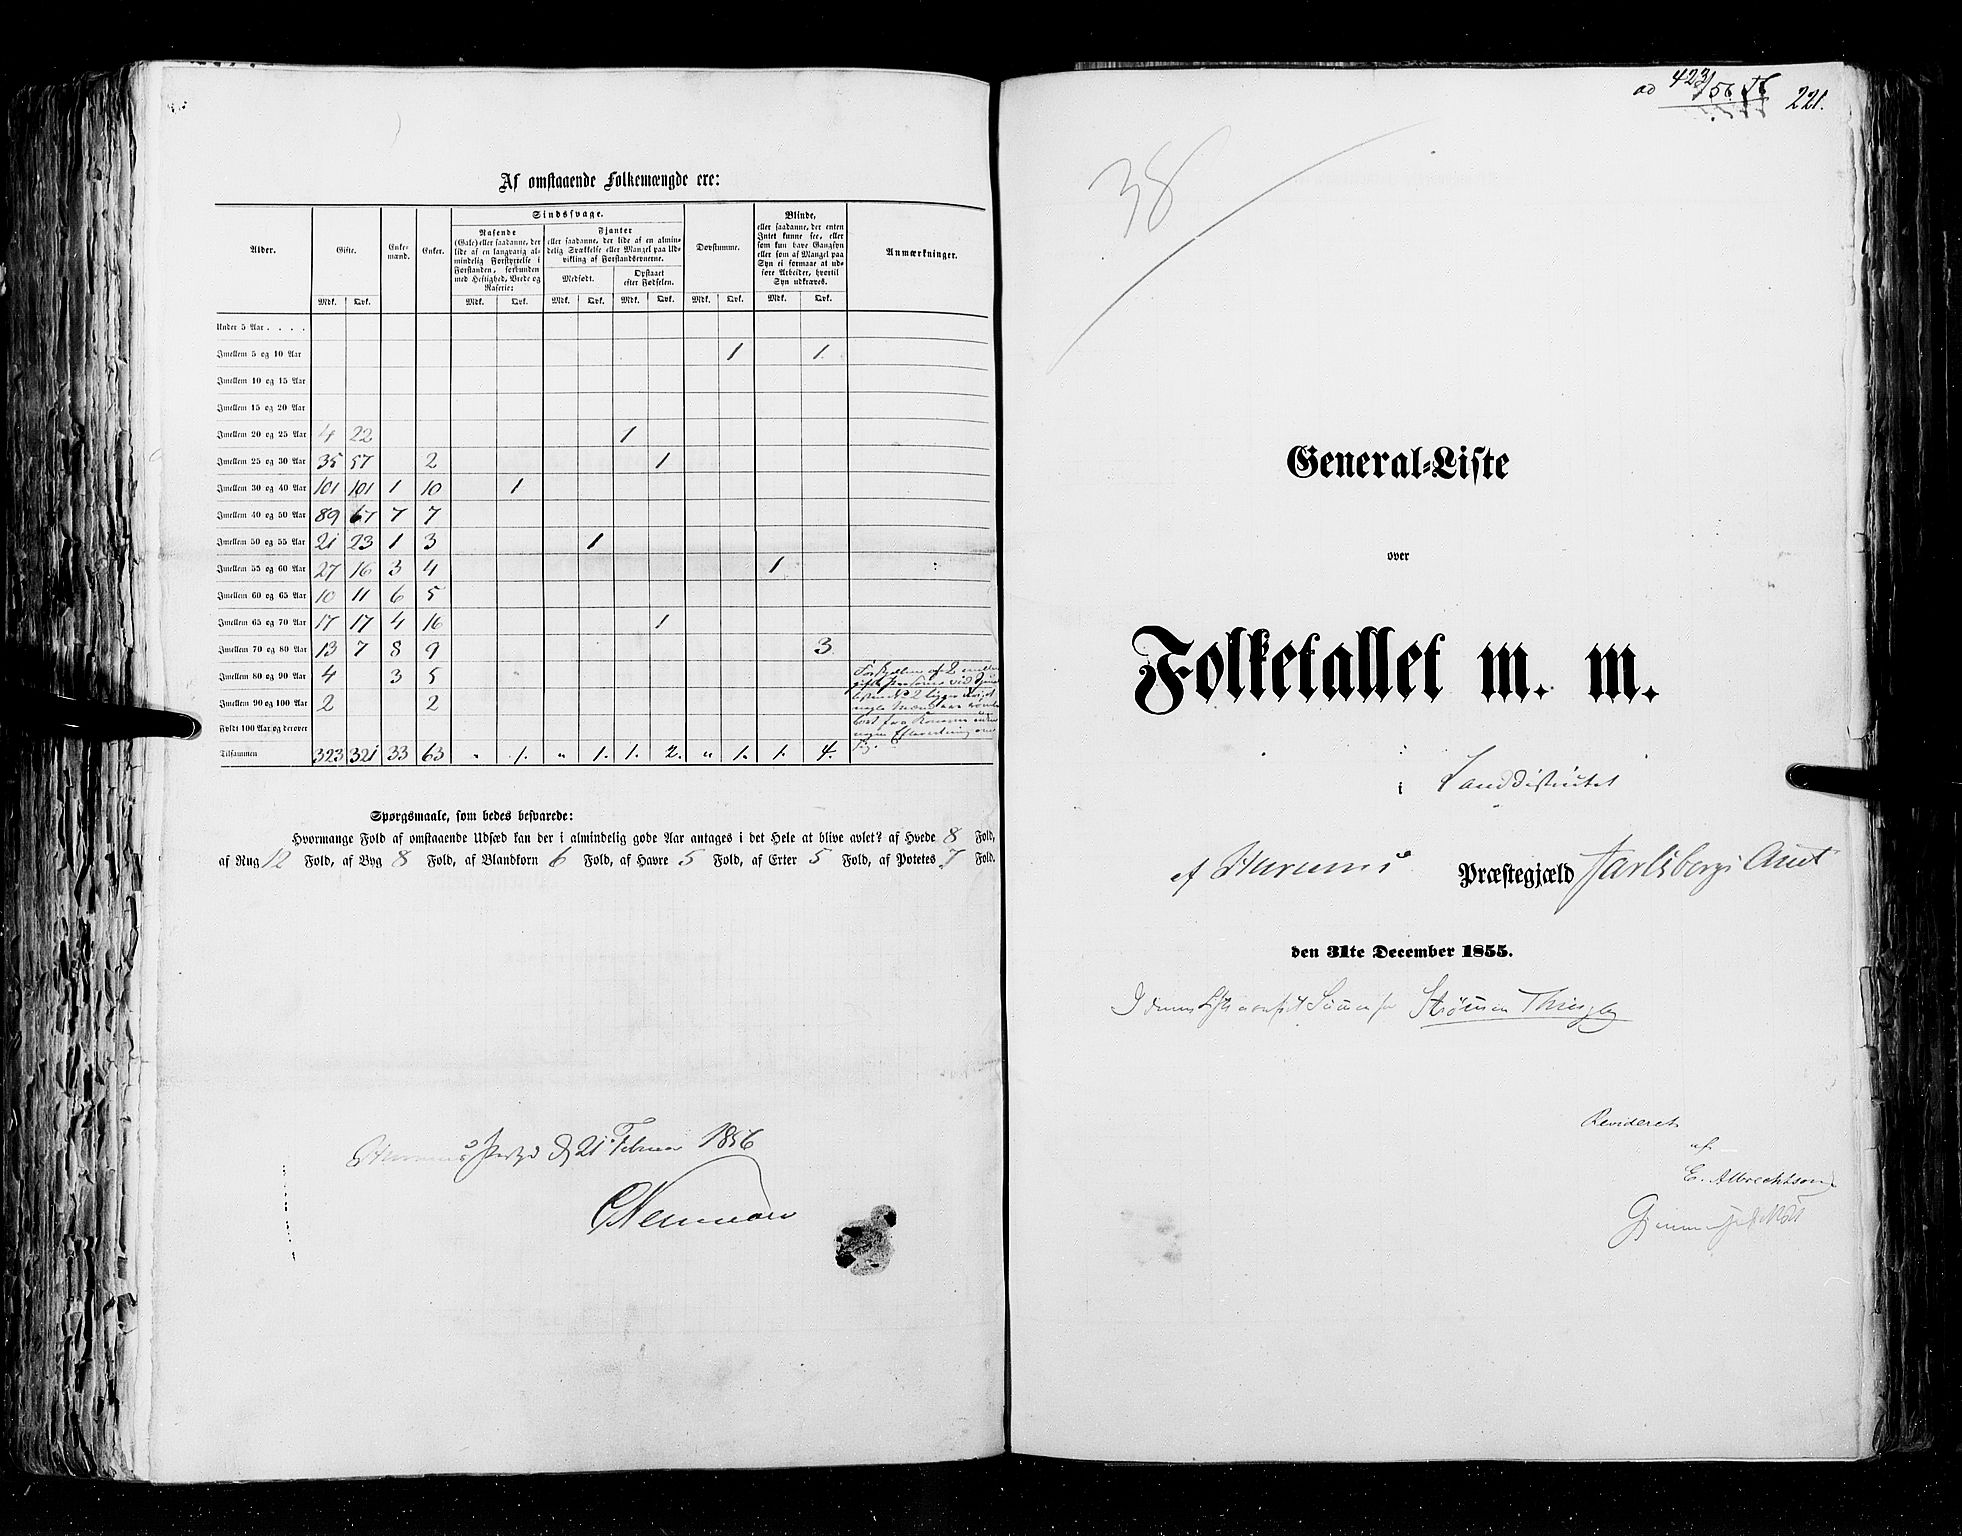 RA, Folketellingen 1855, bind 2: Kristians amt, Buskerud amt og Jarlsberg og Larvik amt, 1855, s. 221